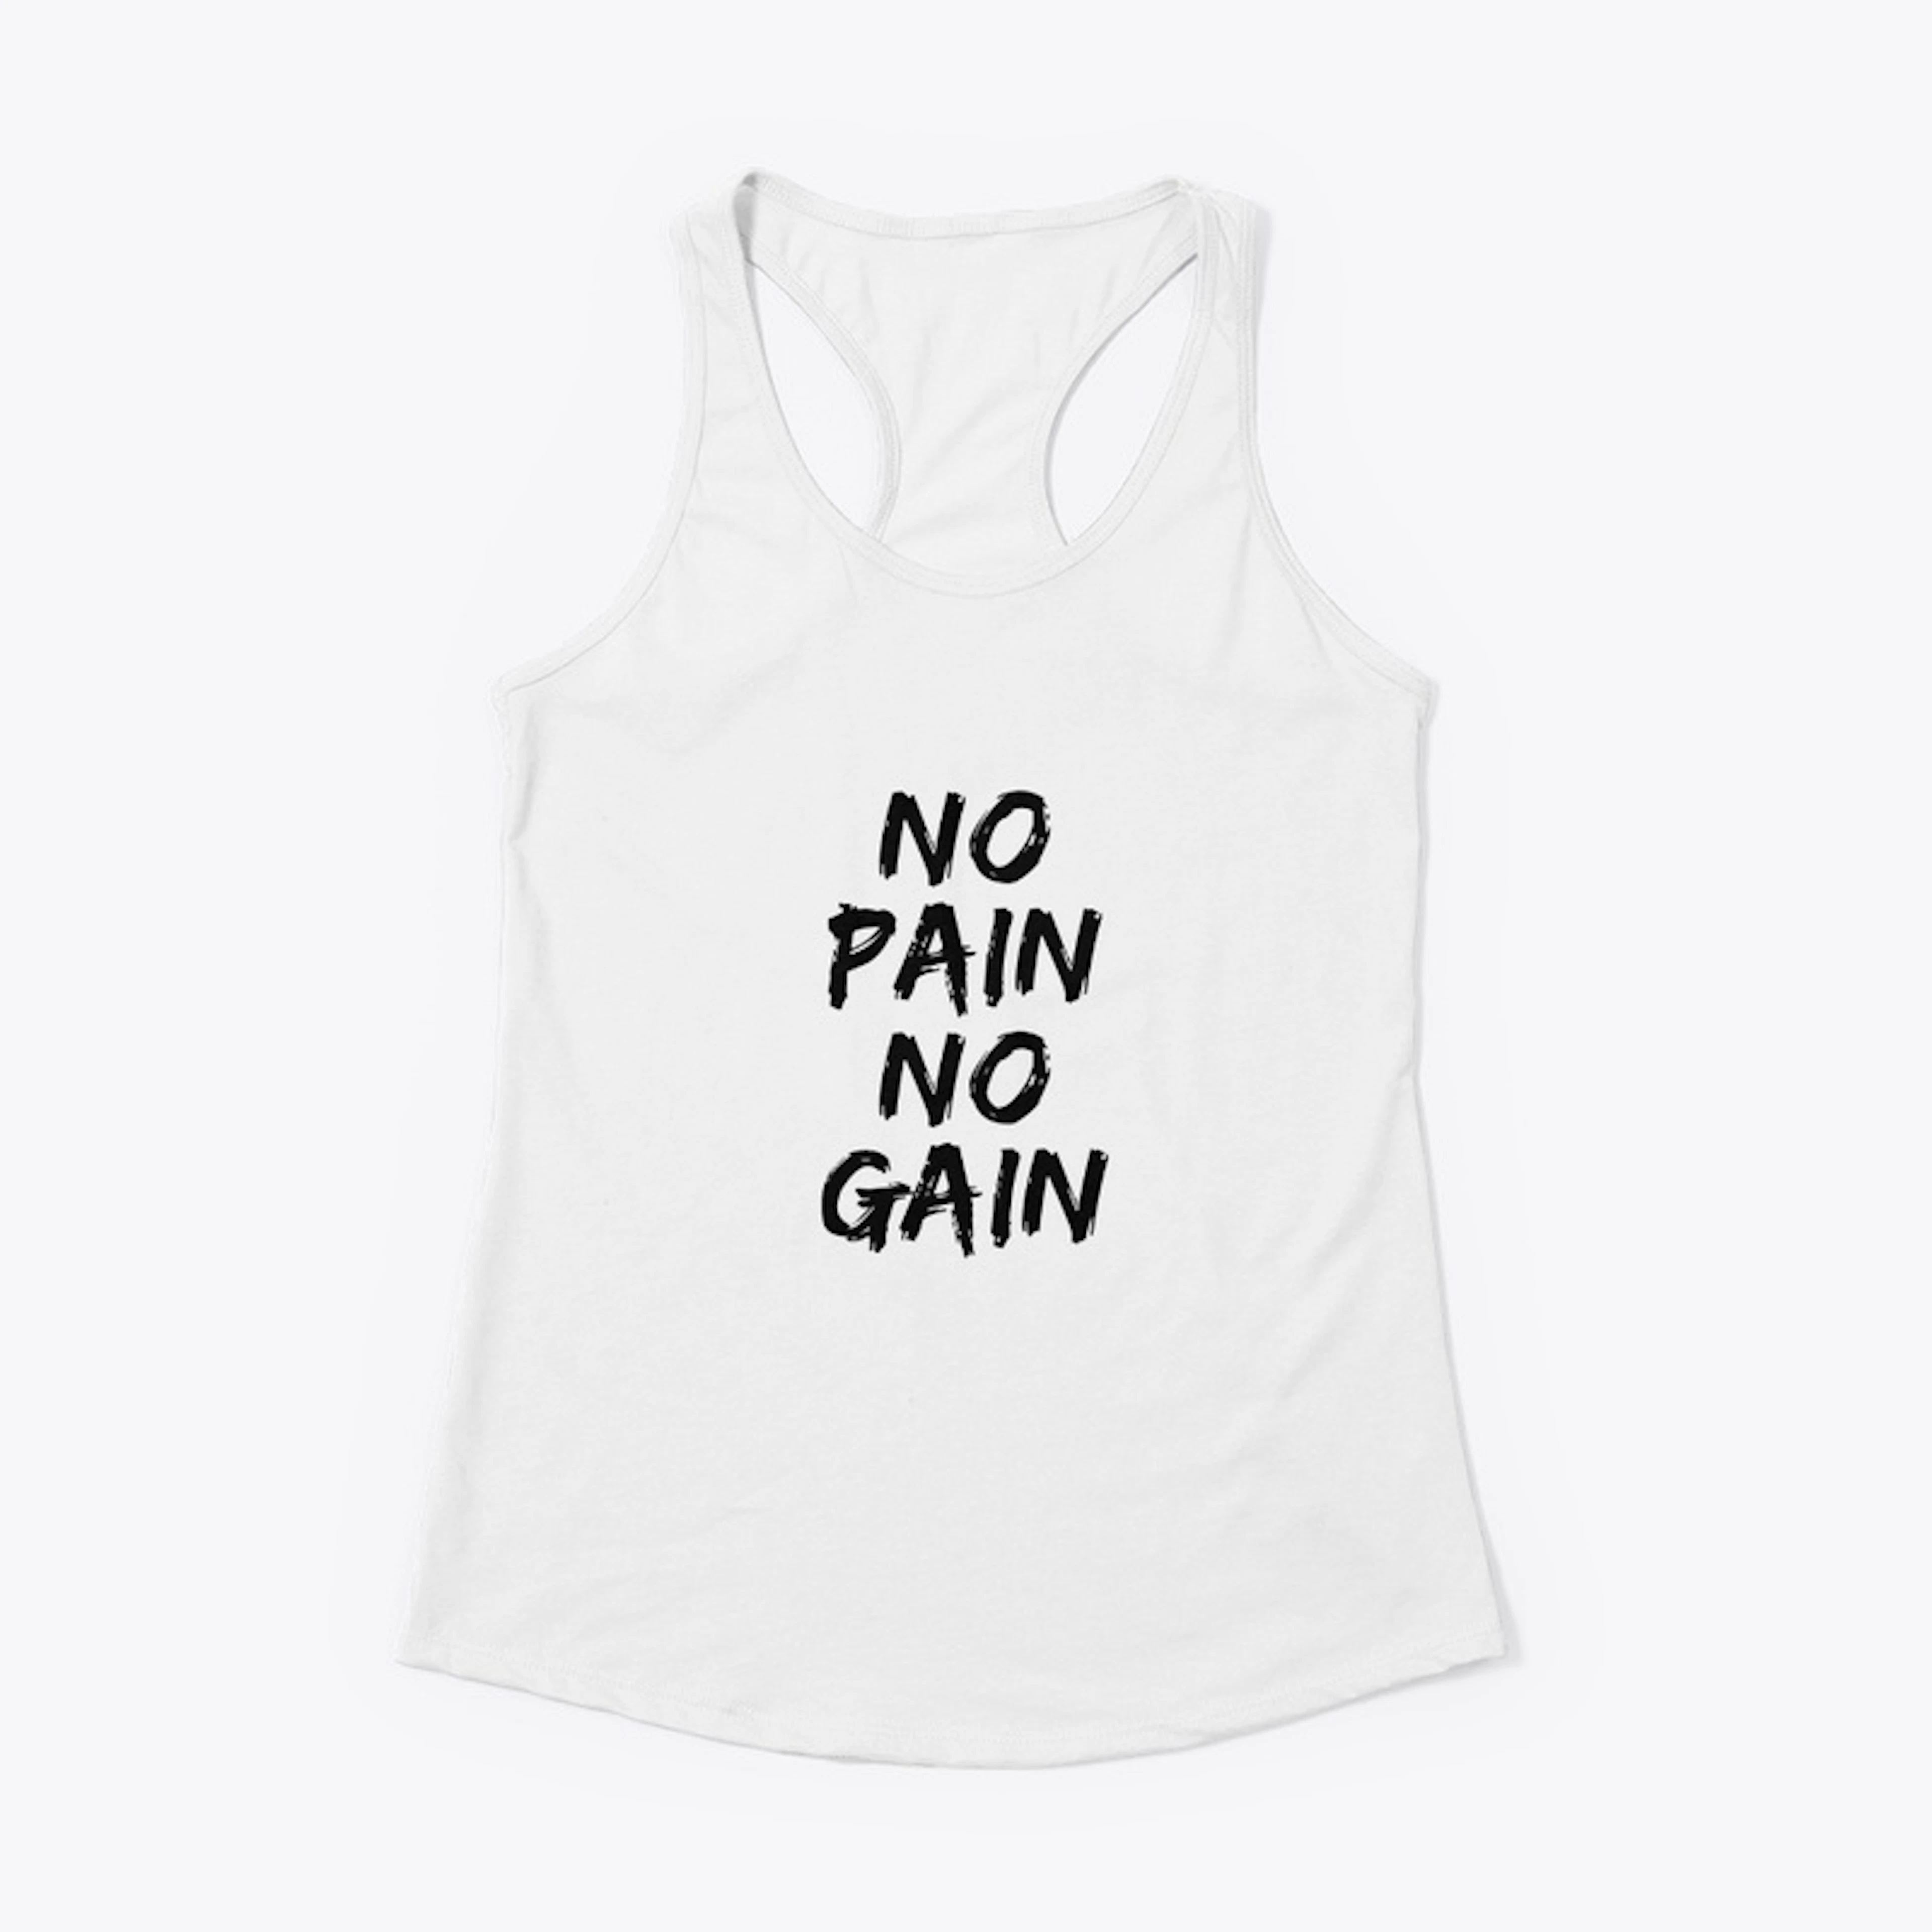 No pain. No gain.